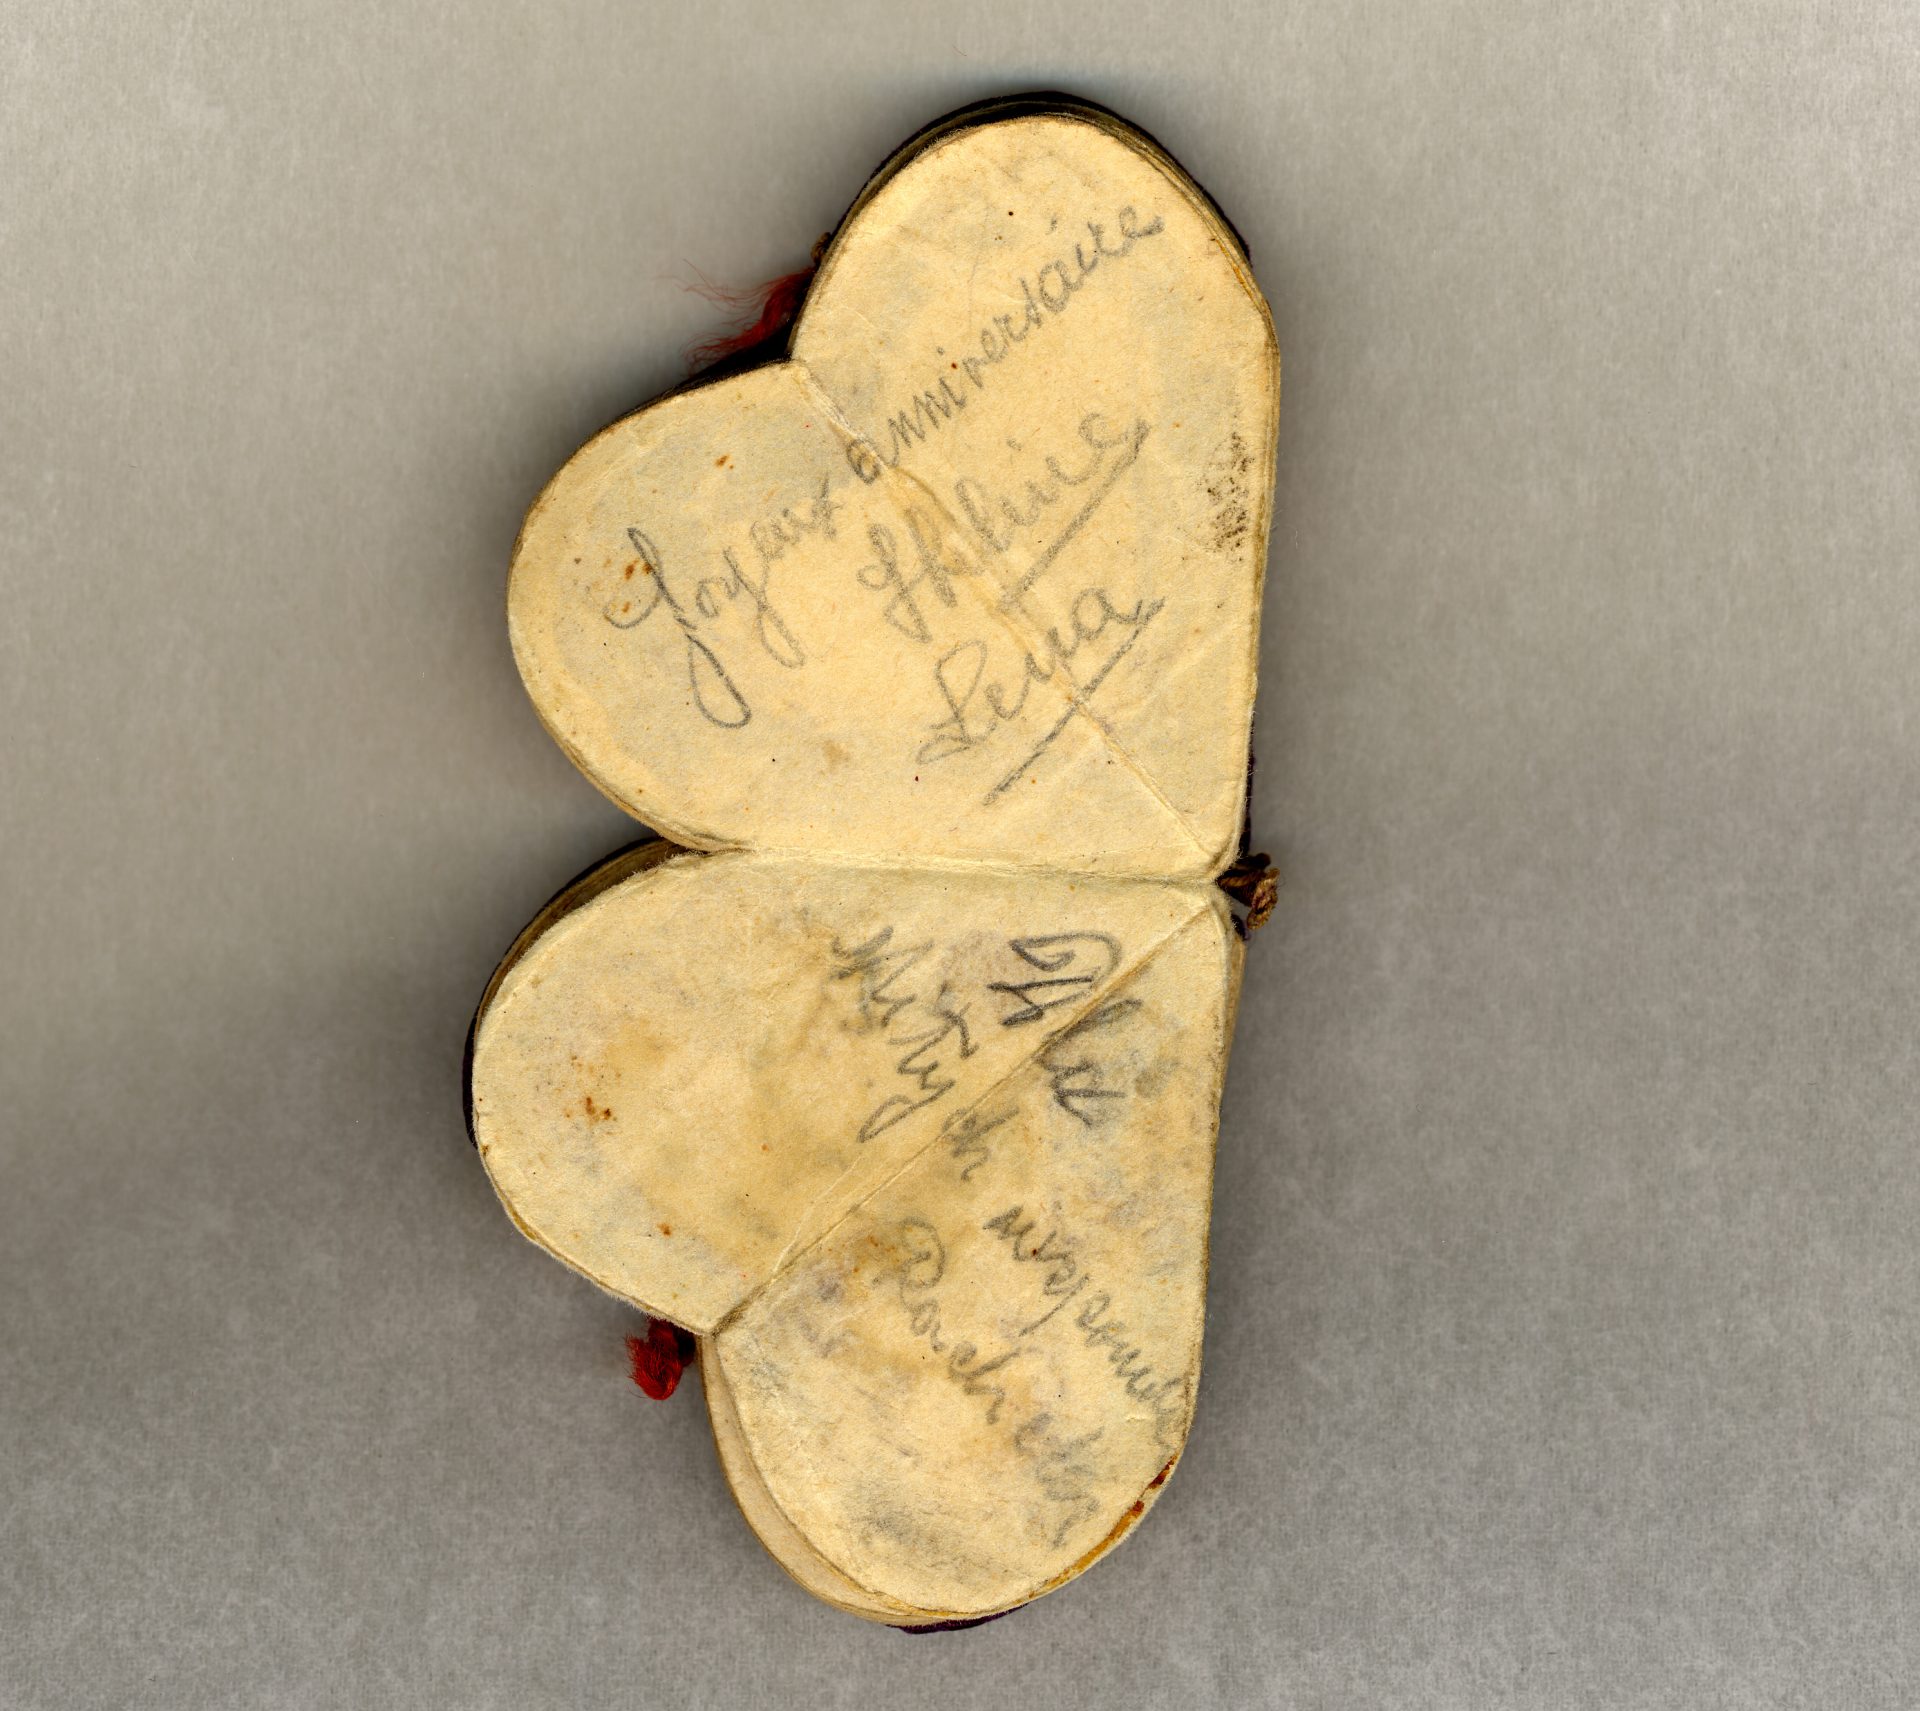 «Joyeux anniversaire», Hélène (Lena). «Pour d'agréables souvenirs», Rachela. Messages écrits dans le coeur d'Auschwitz.